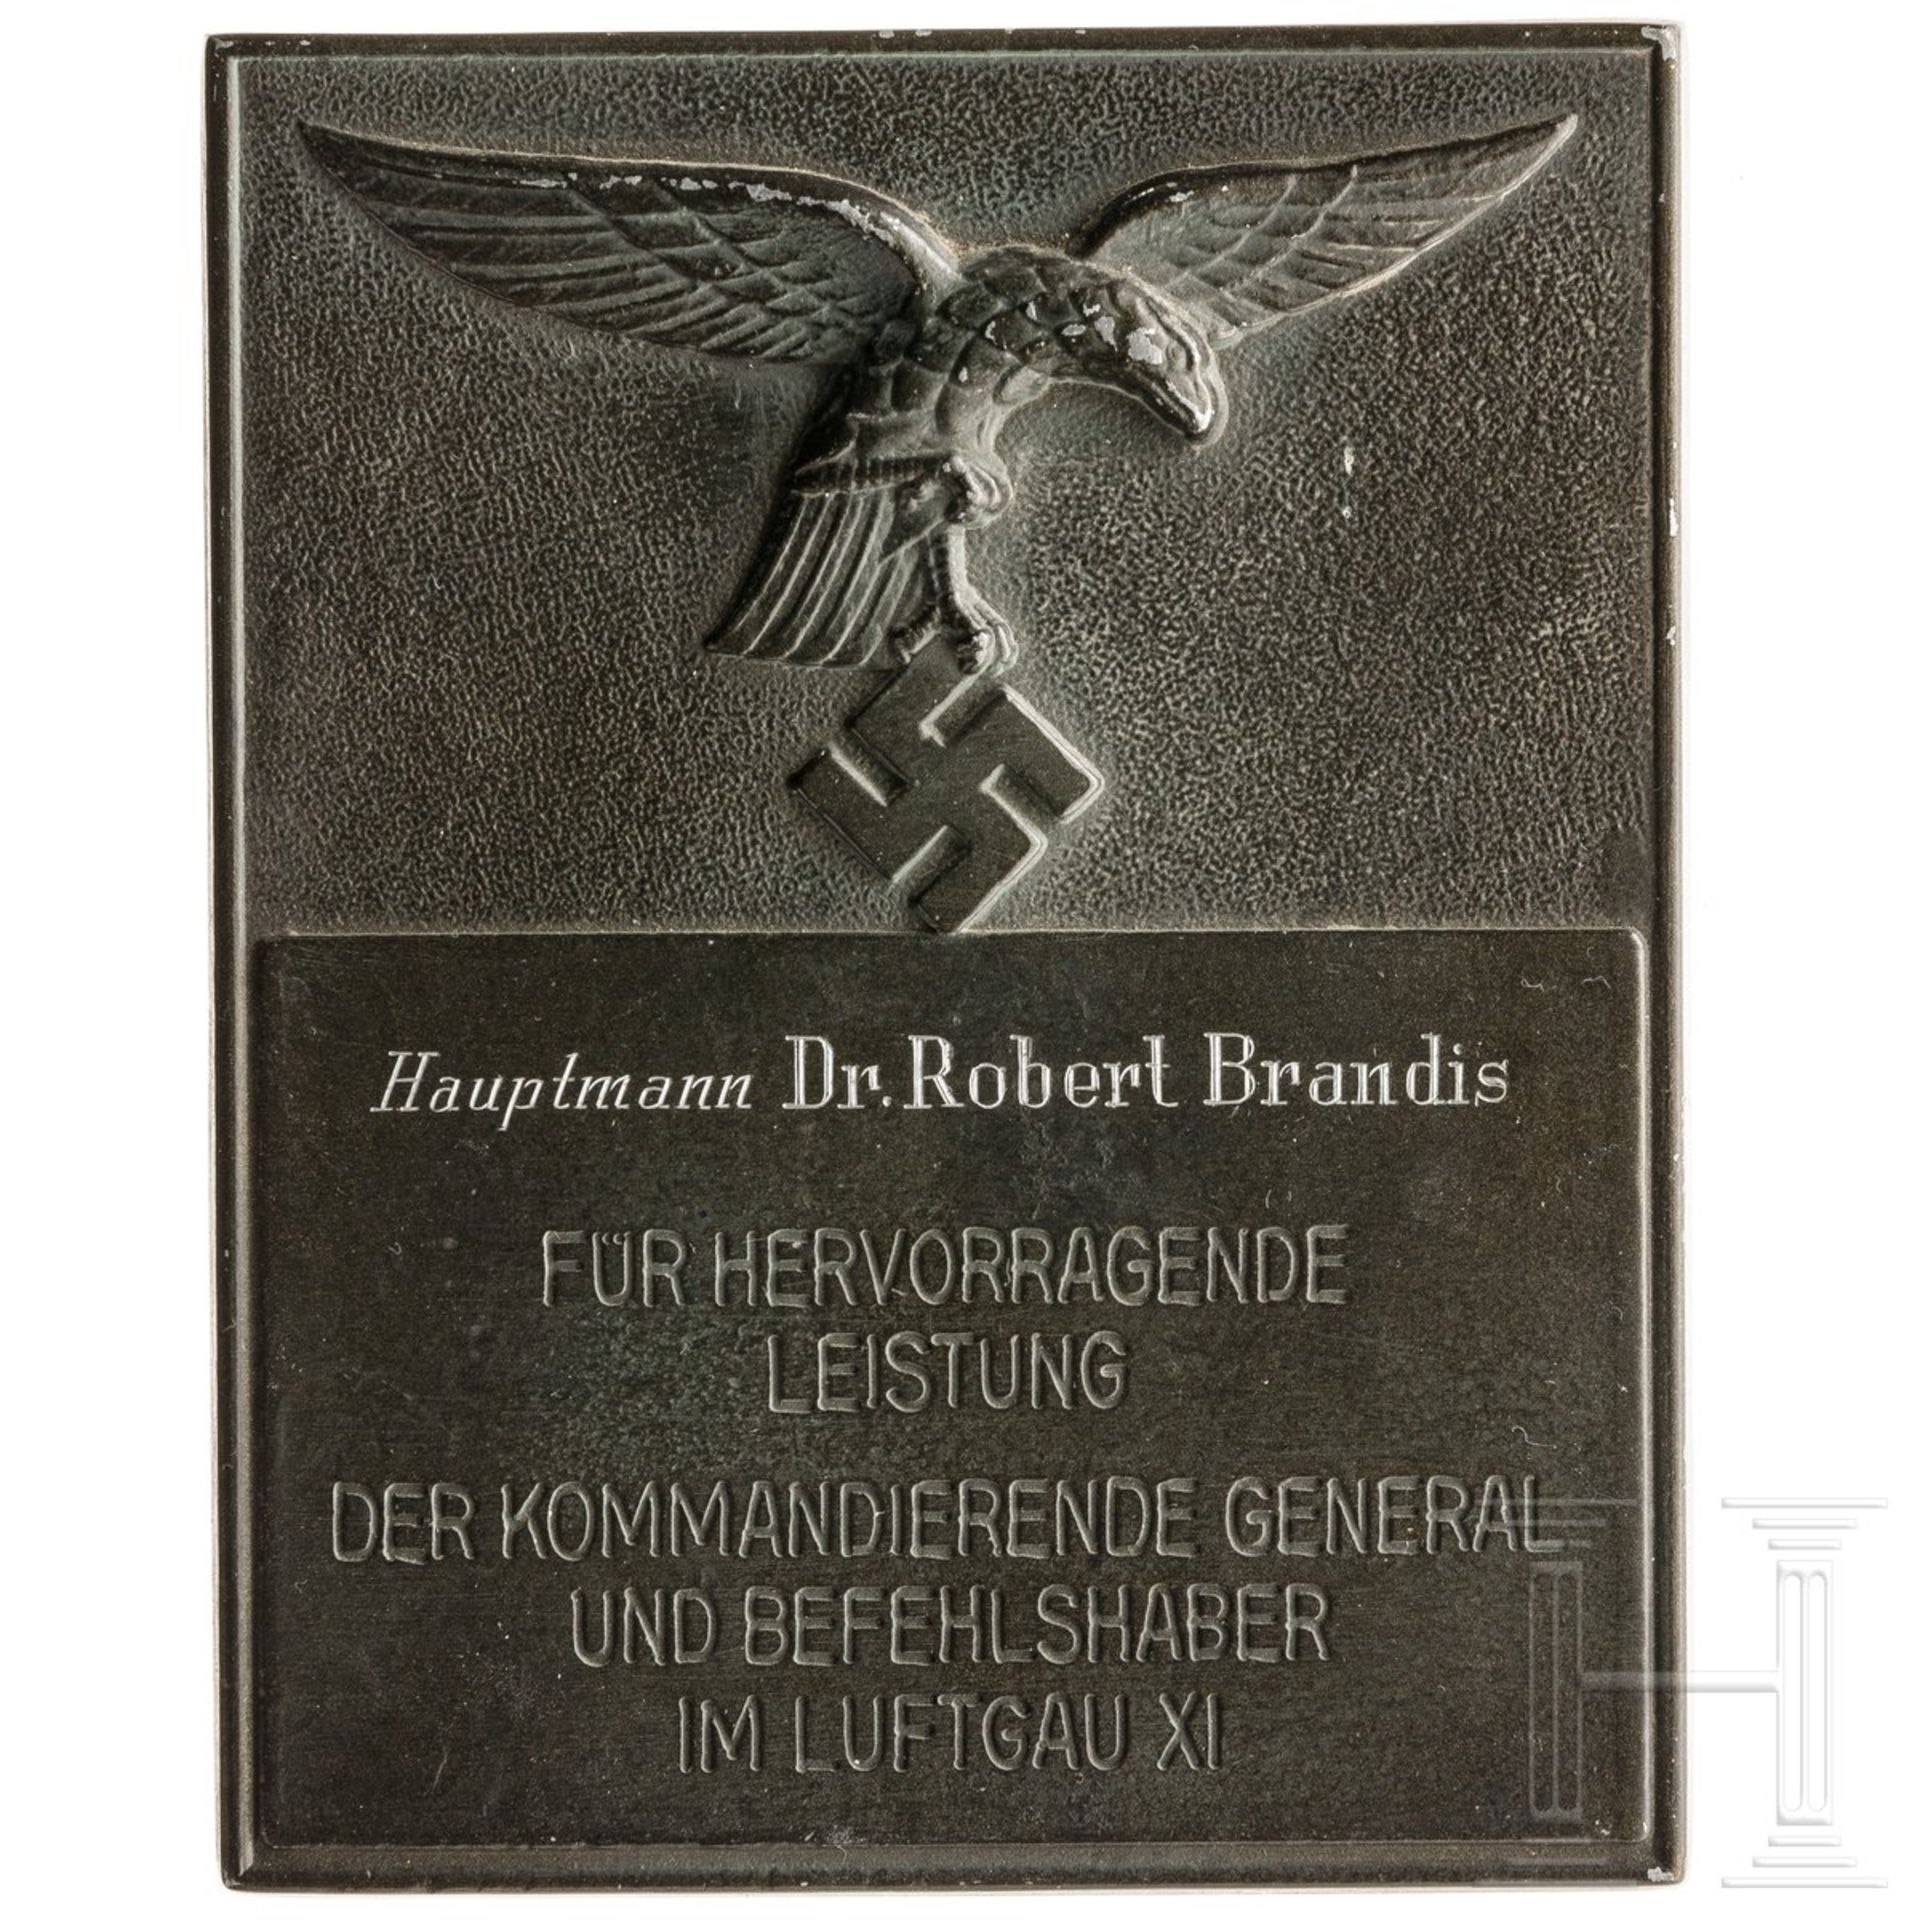 Ehrenschild des Luftgaues XI